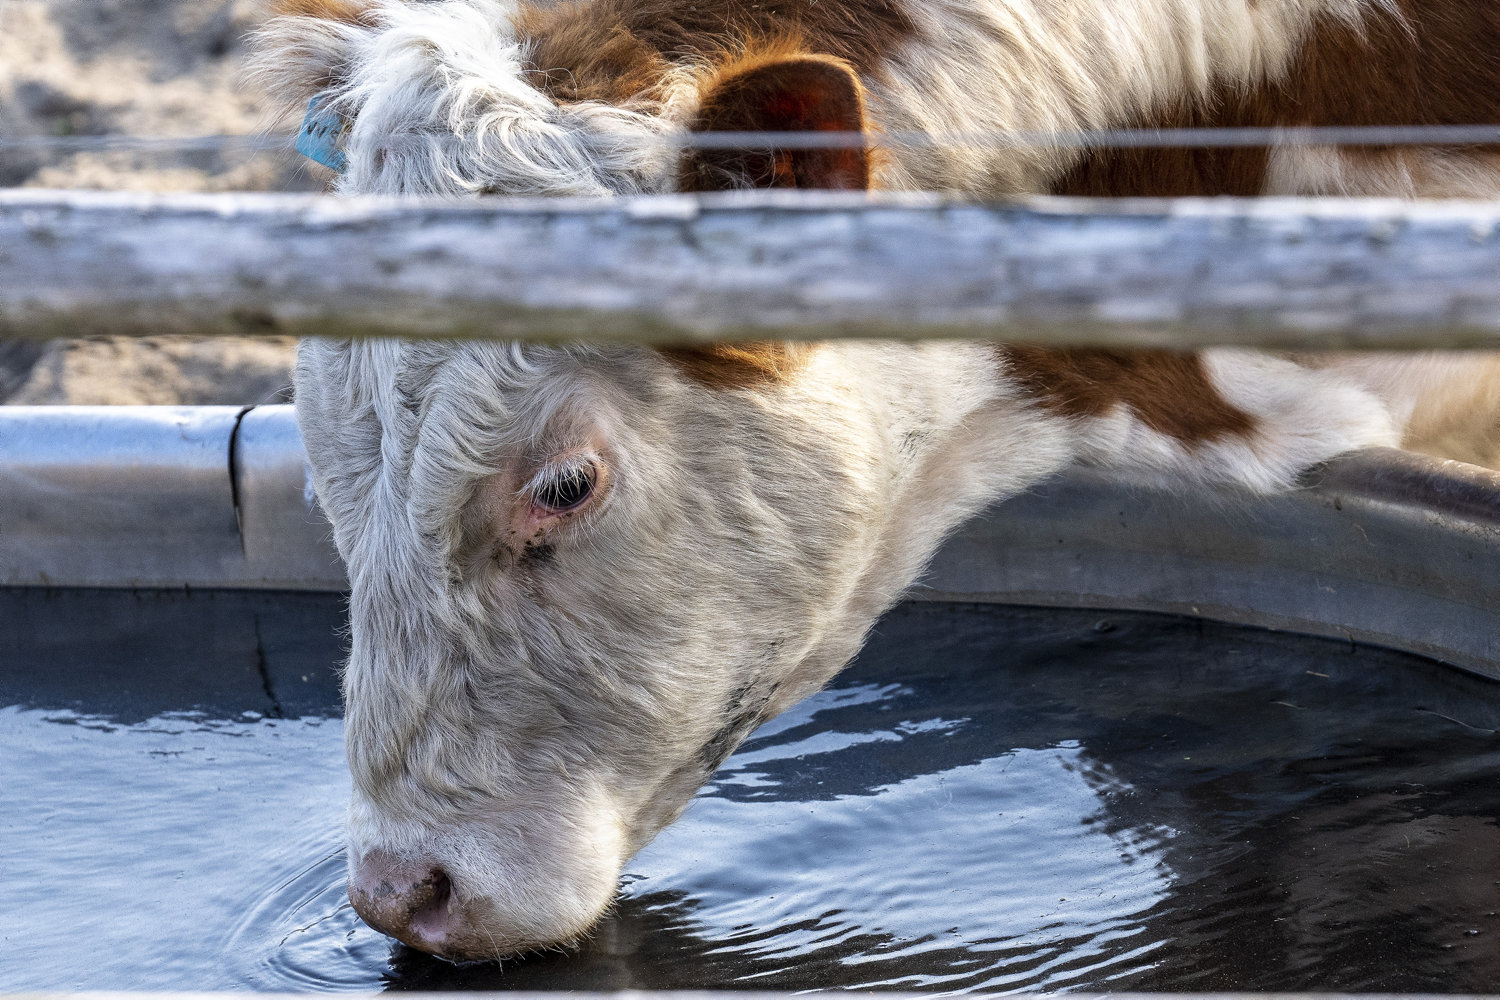 landmand anklaget for dyremishandling efter fund af døde køer